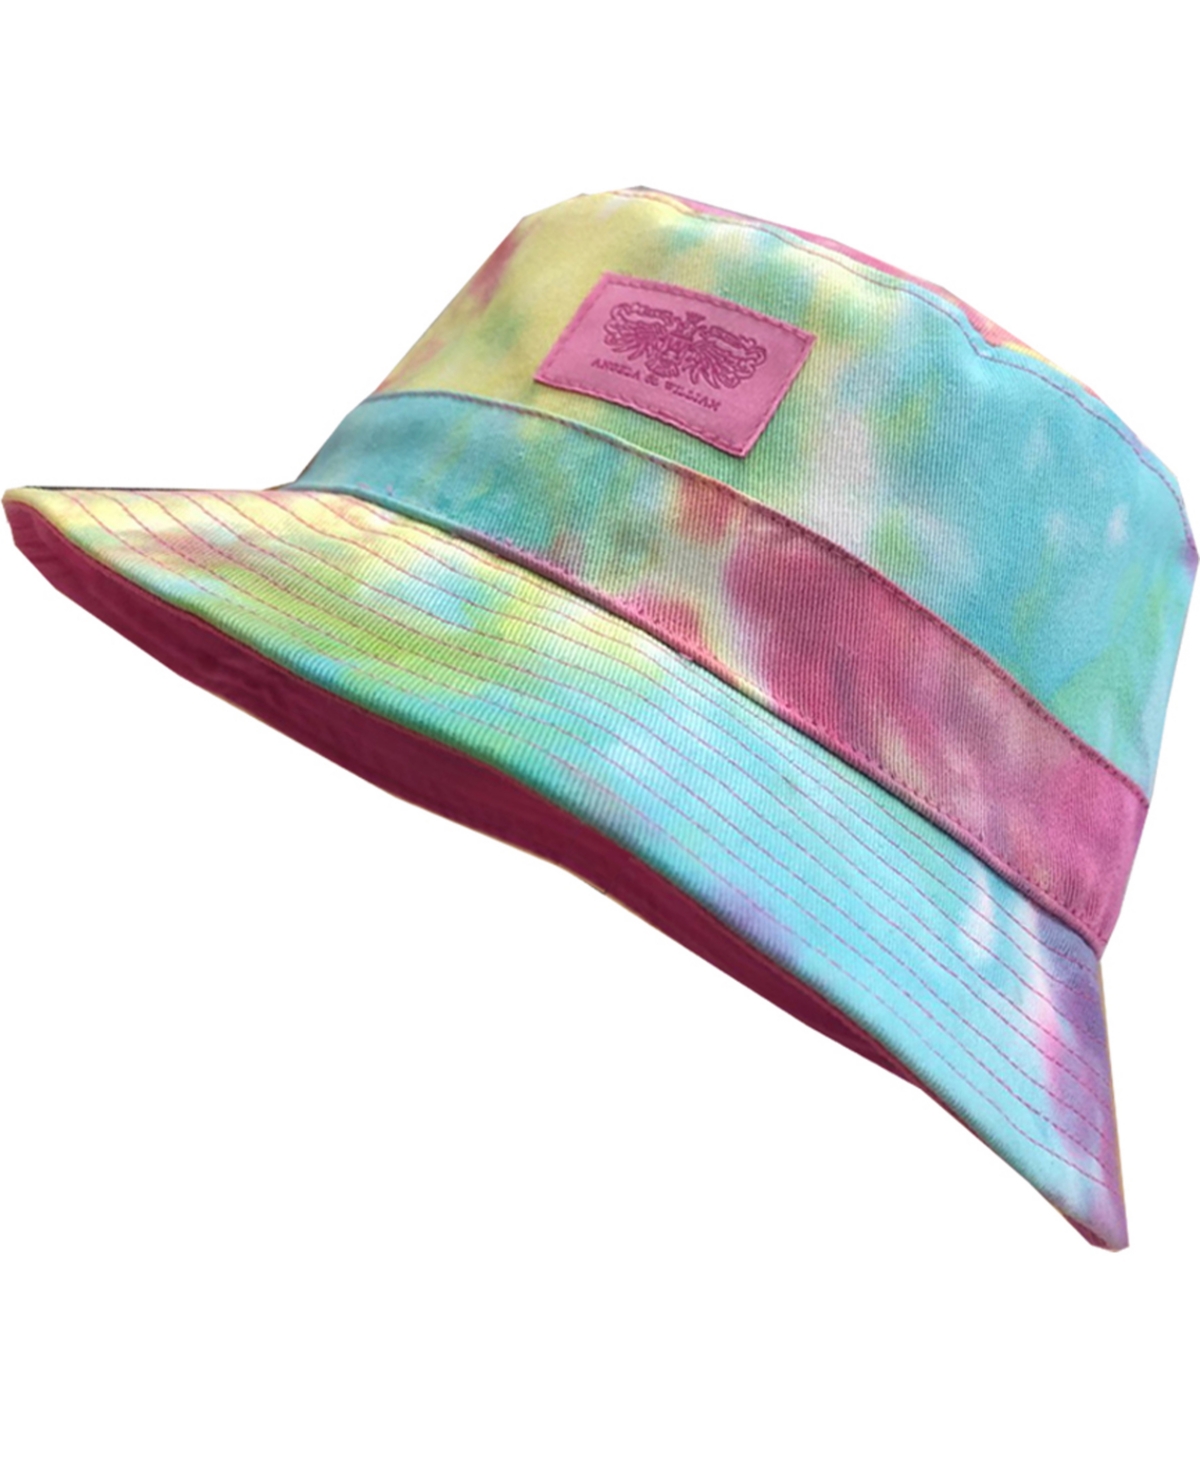 Unisex Tie Dye Double Side Wear Reversible Bucket Hat - Mix Hot Pink